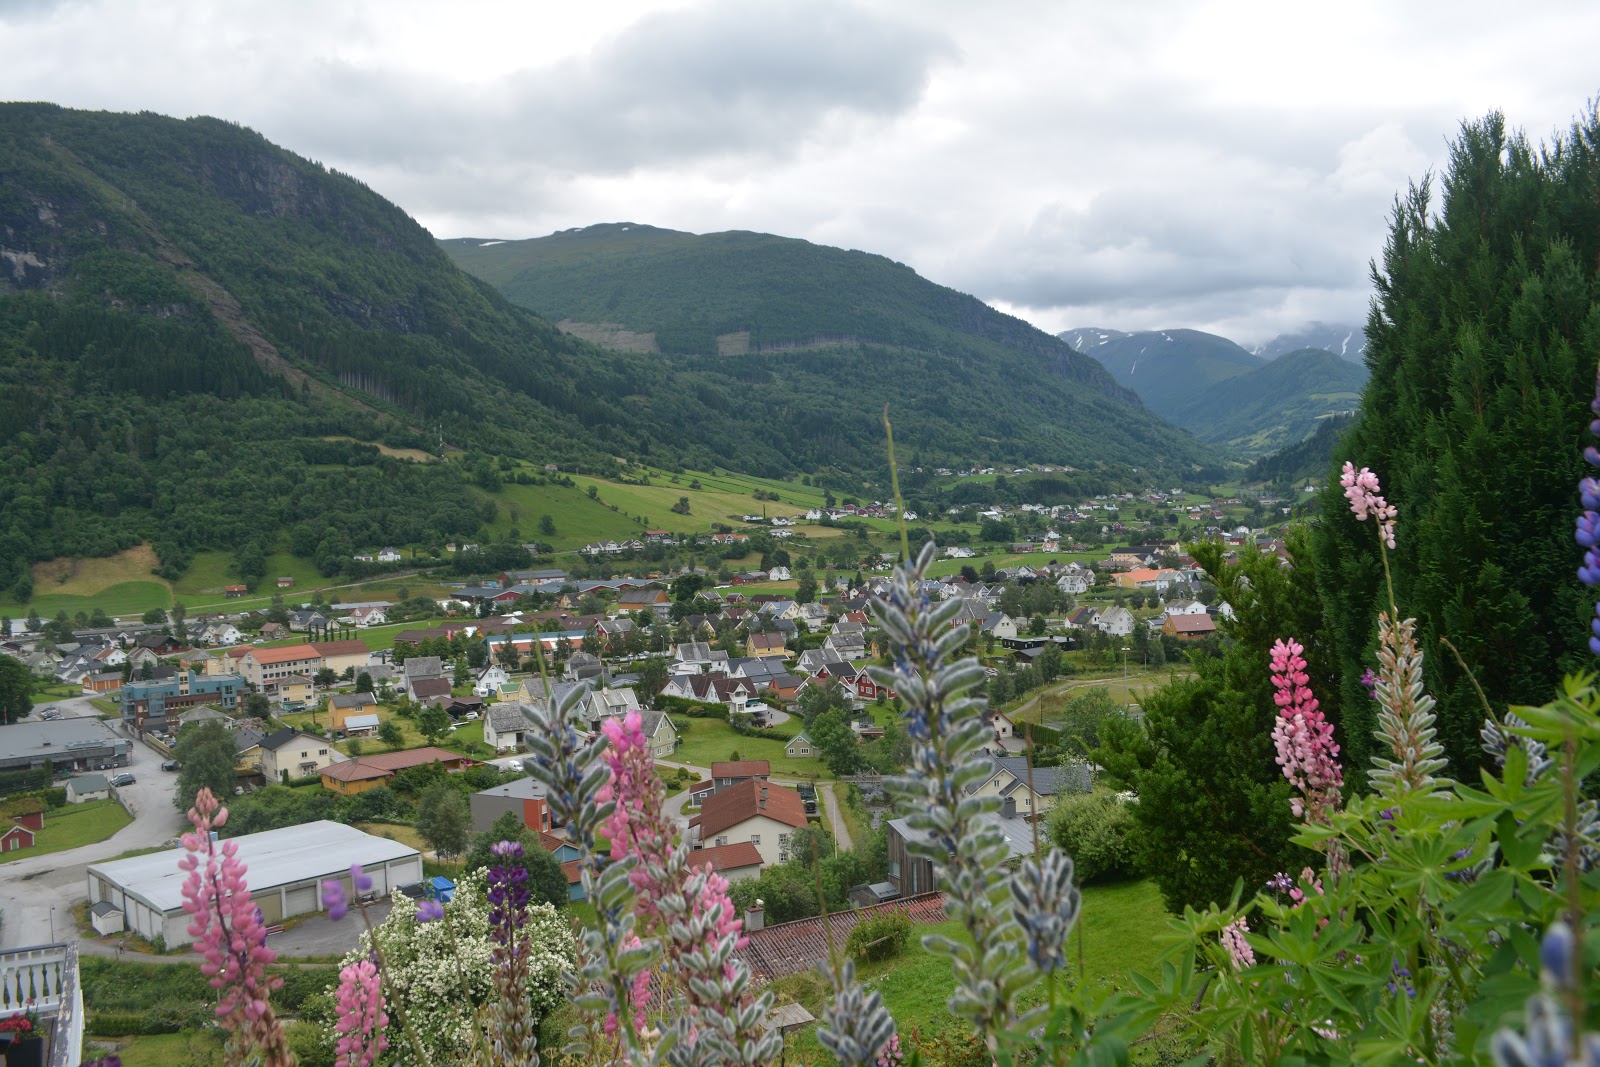 Miss Happyfeet 16 Reasons To Visit Vik I Sogn Norway